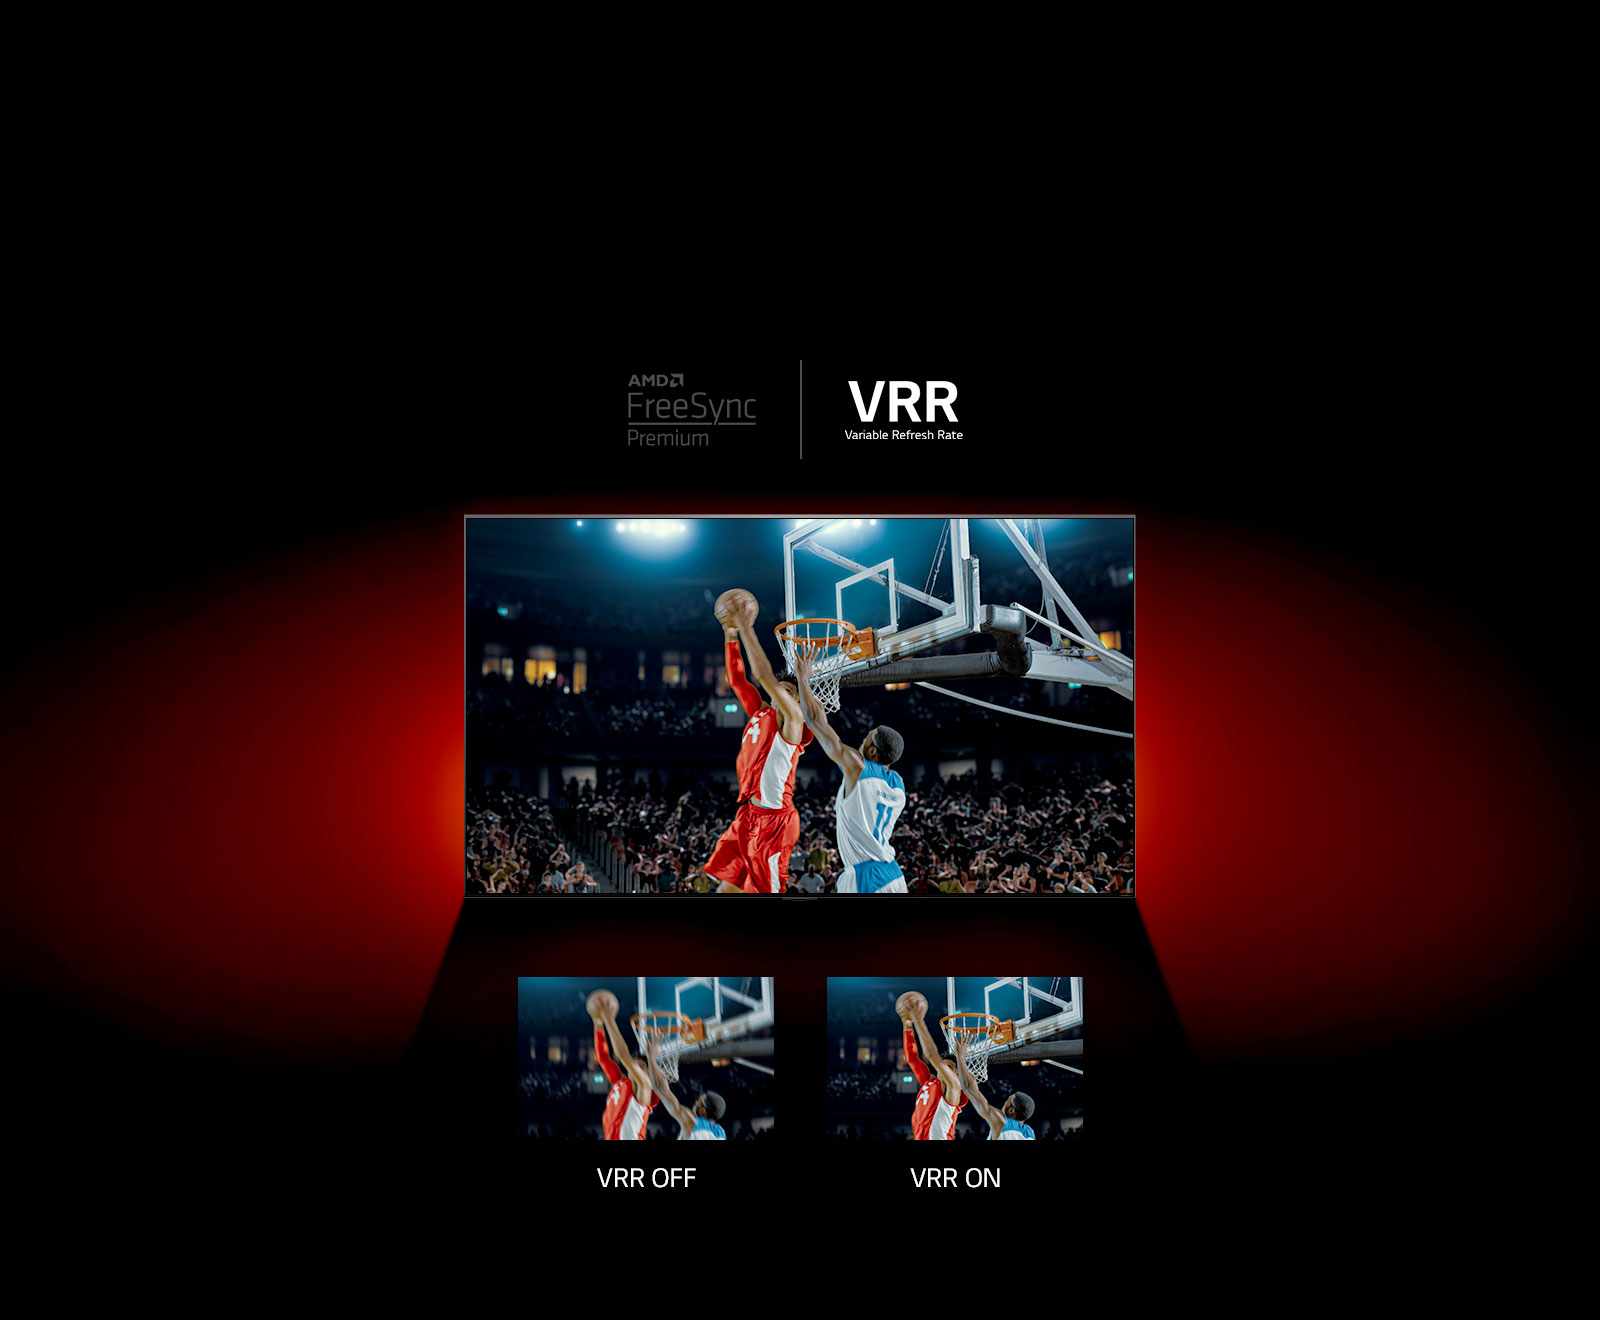 赤い壁の前に立っているQのテレビを見ることができます - 画面上の画像は、2人のプレーヤーが演奏したバスケットボールの試合を示しています。すぐ下に、2つの画像領域が表示されます。左側には、テキストVRRがオフになり、同じシーンのぼやけた画像が表示されますが、右側にはテキストVRRがオンと同じ画像が表示されます。